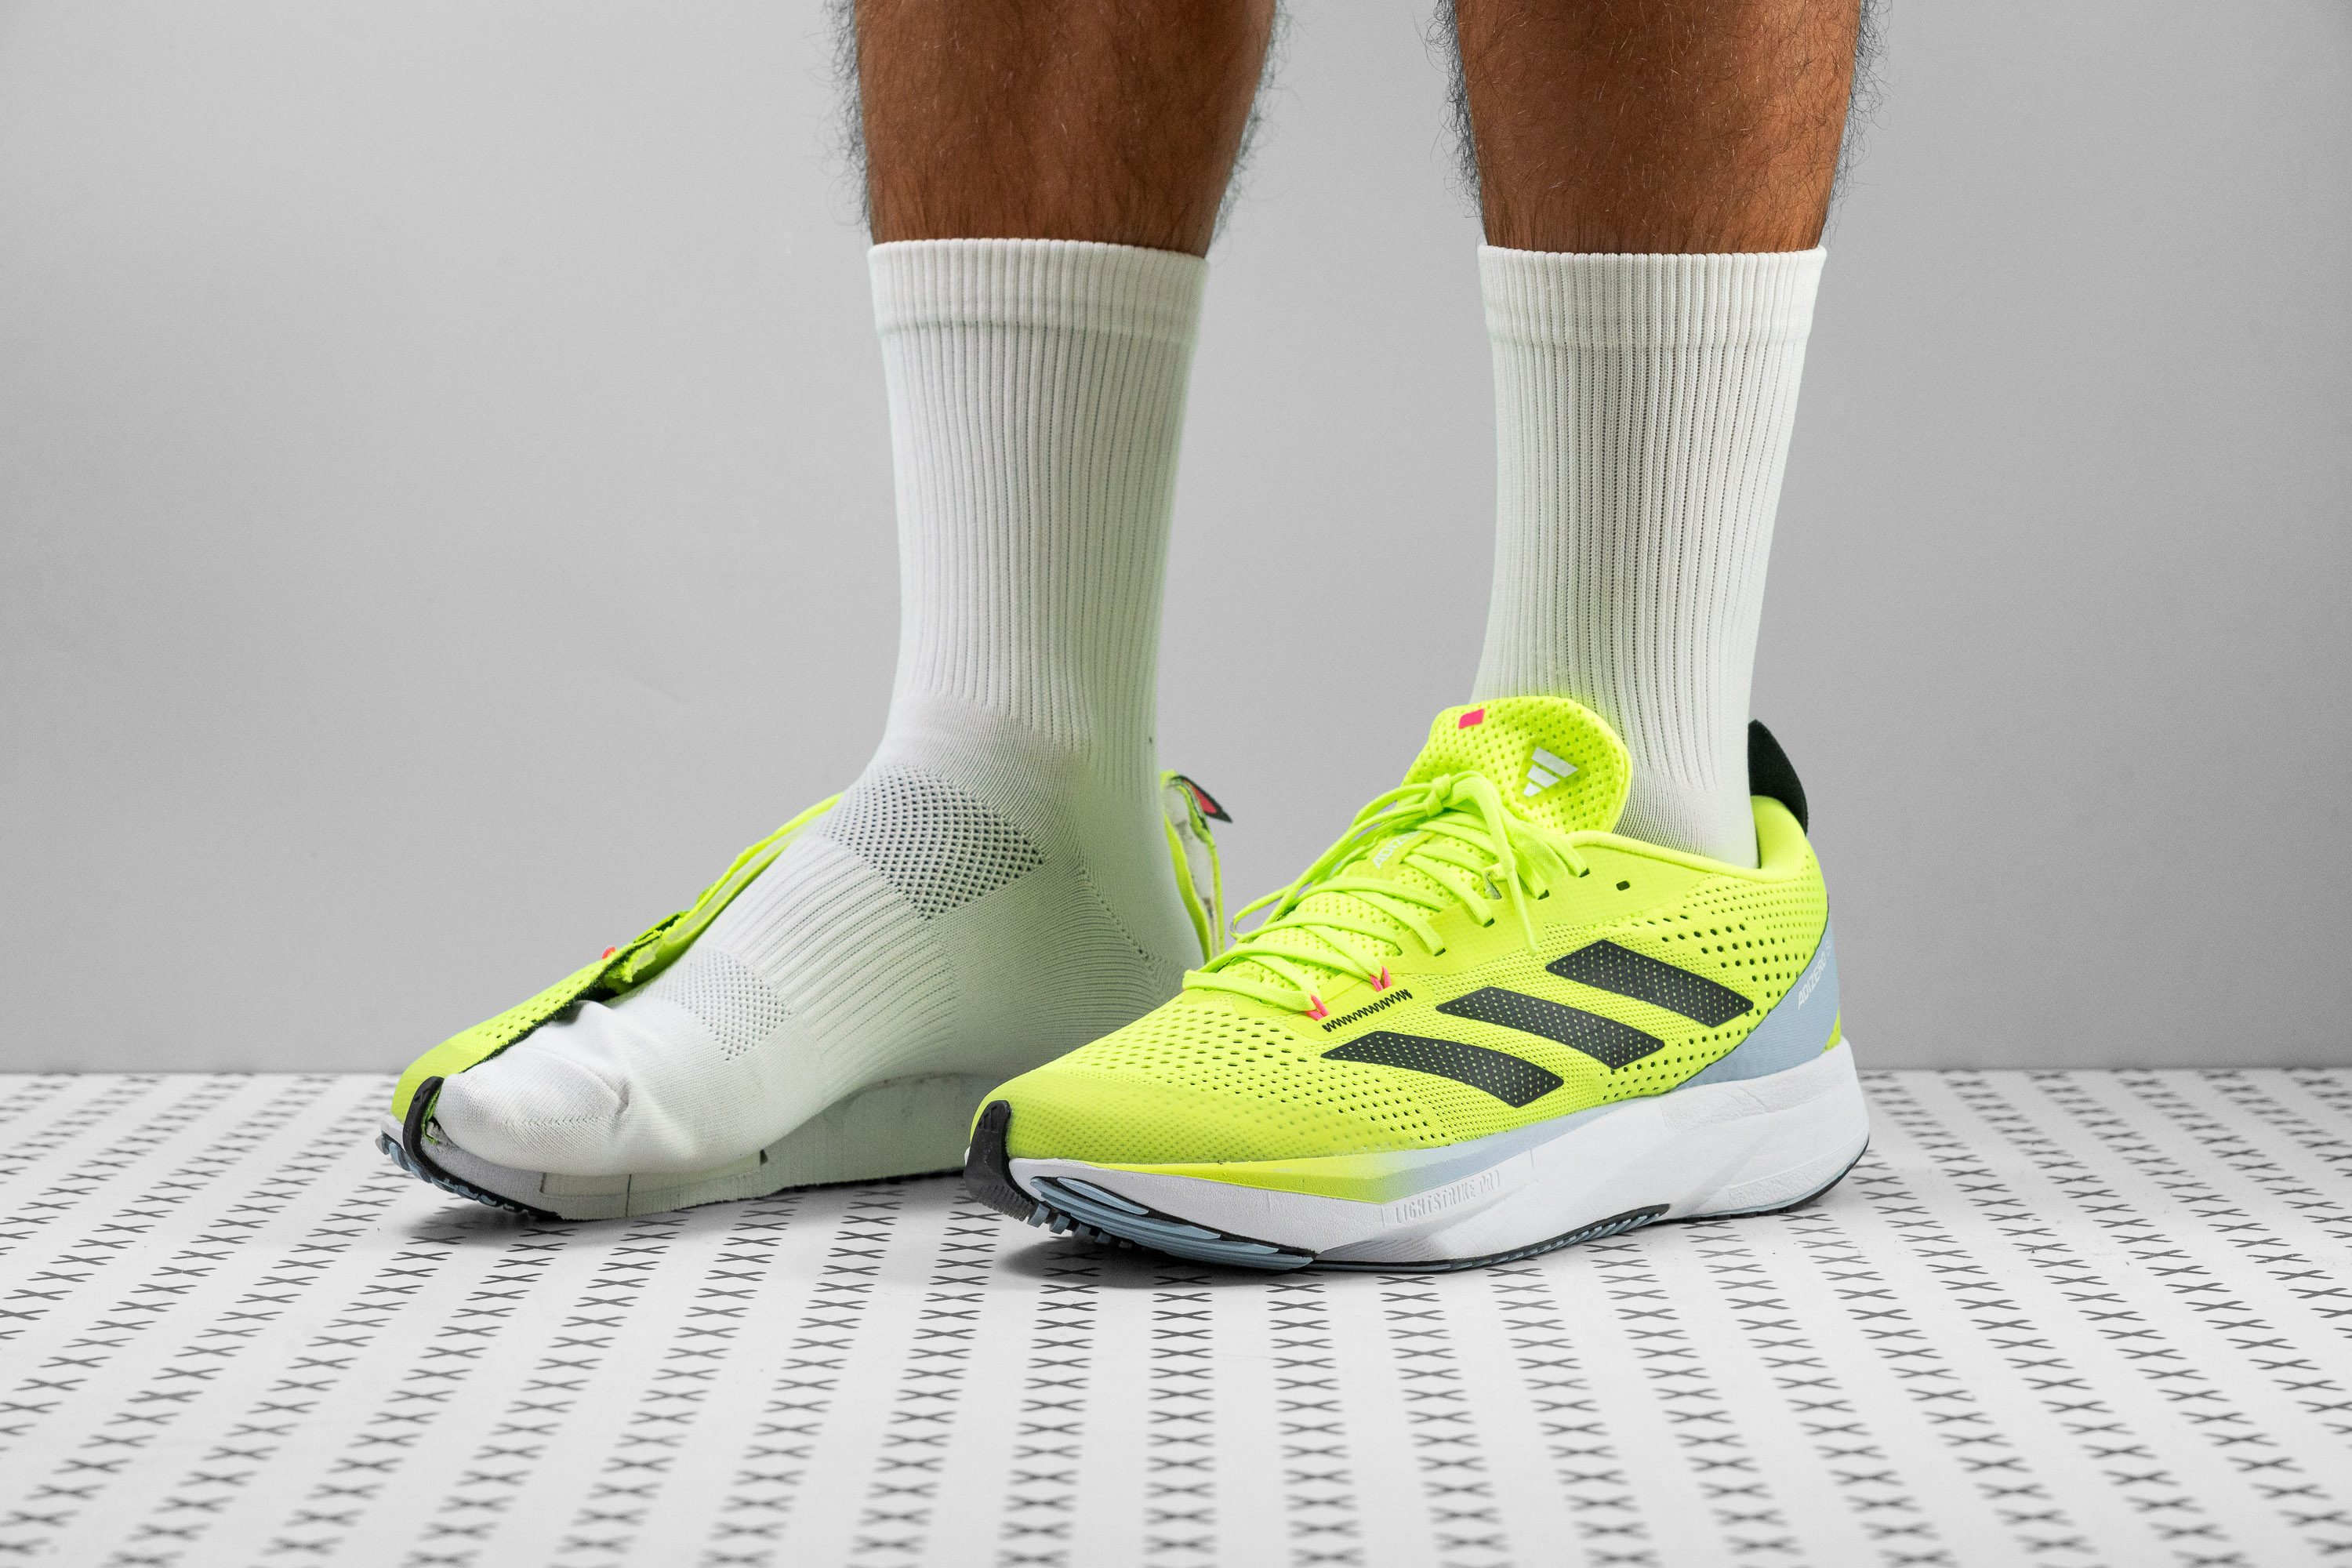 adidas Adizero SL Running Shoes - Black | Men's Running | adidas US